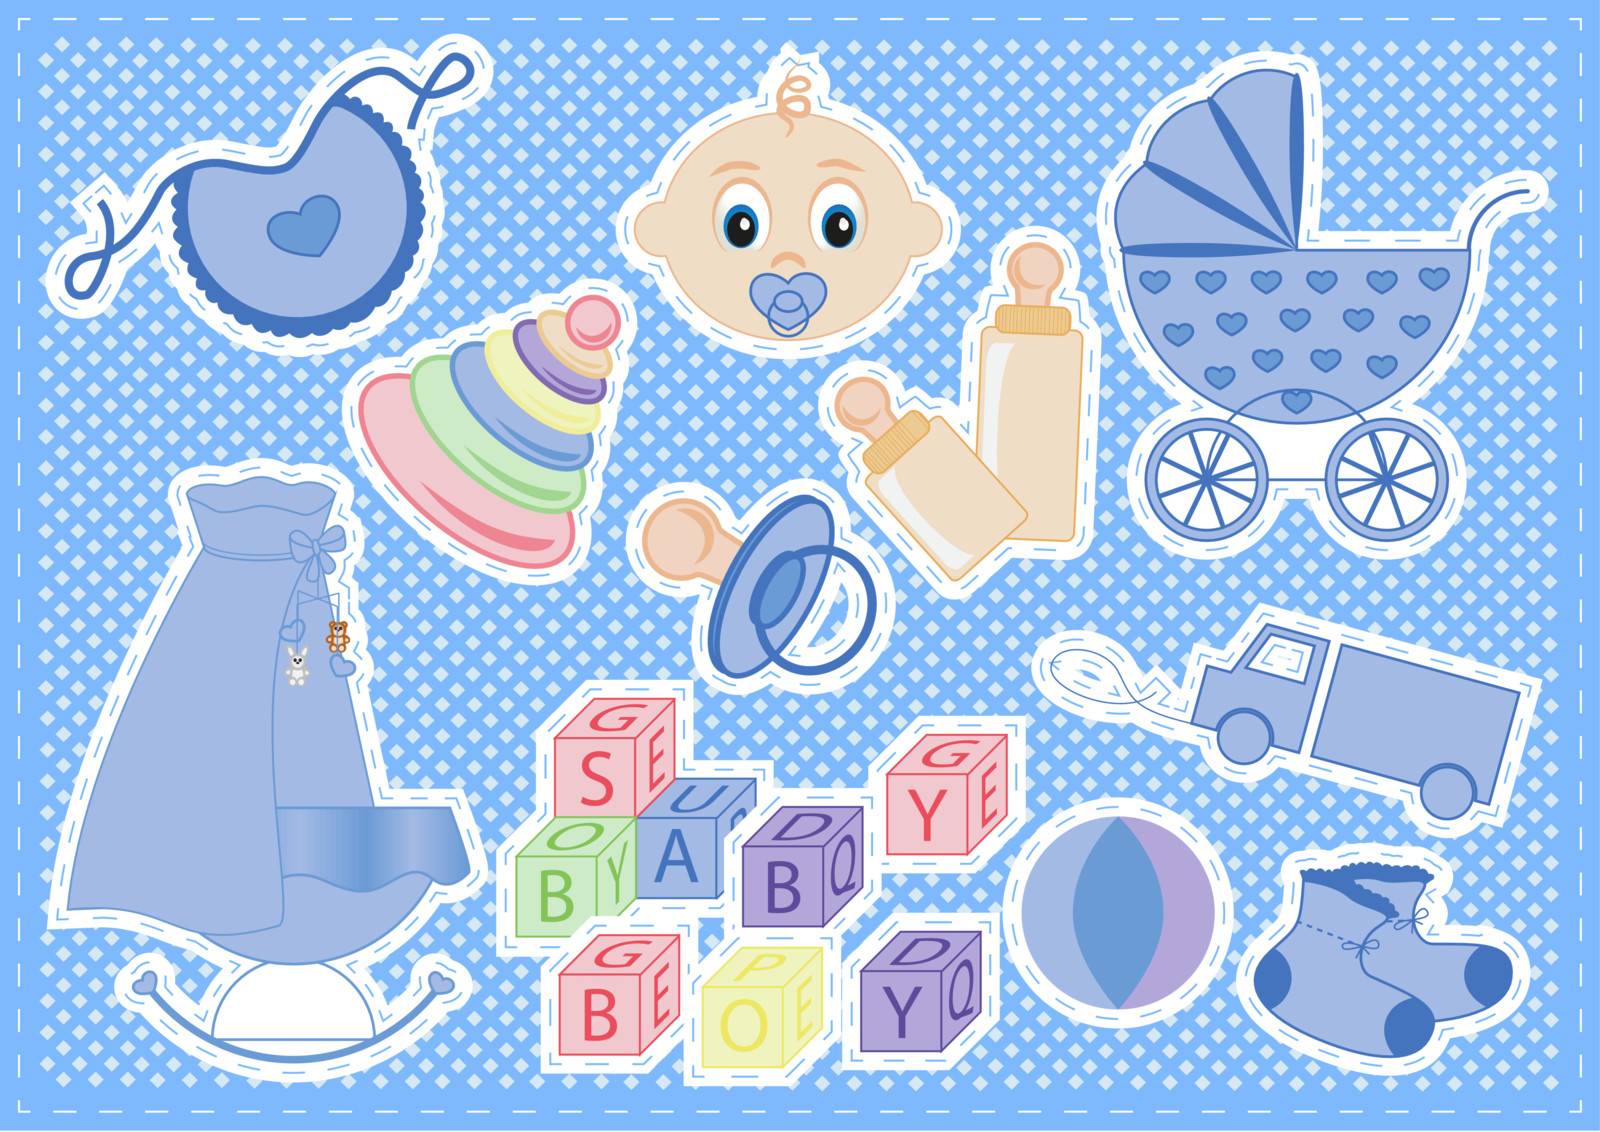 baby boy items by rodakm